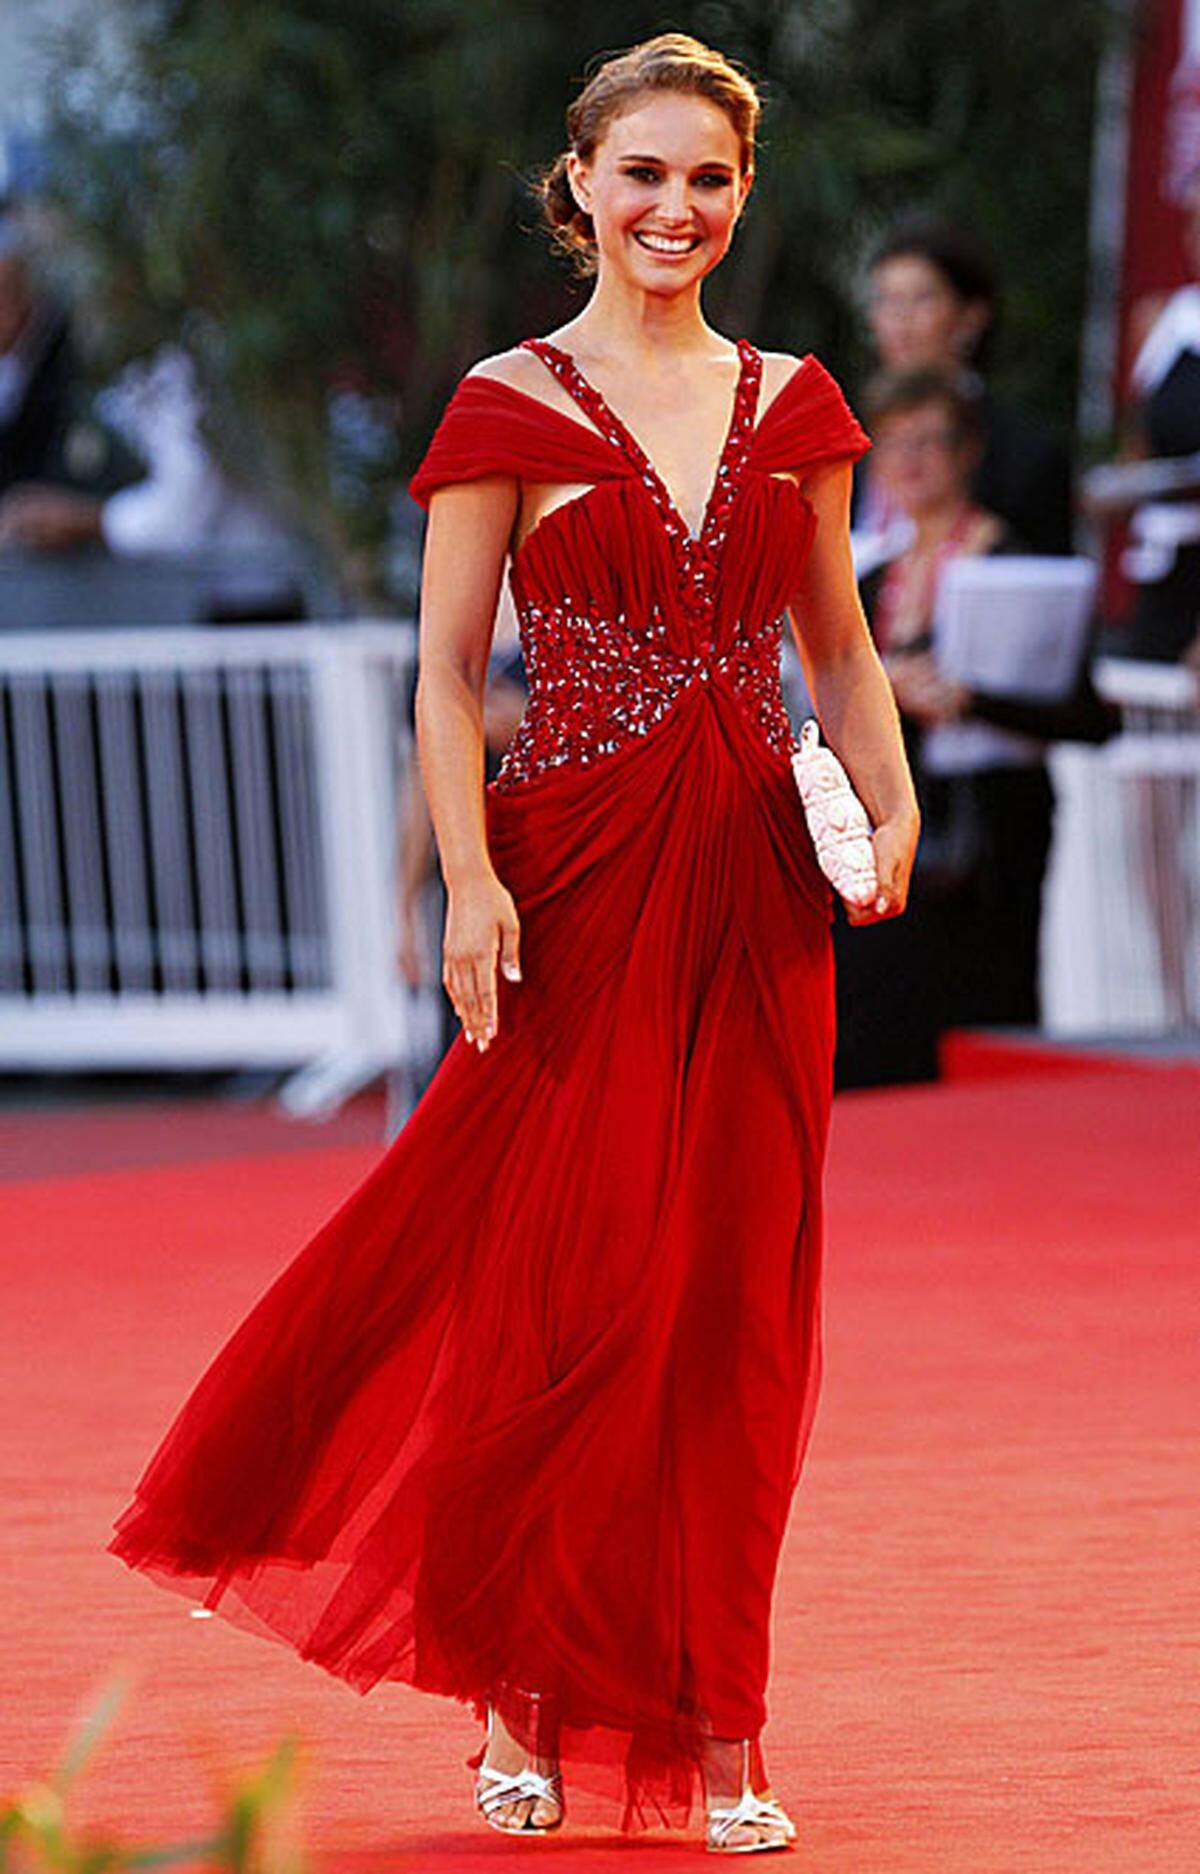 Sie ist eine der großen Stars der diesjährigen Filmfestspiele: Natalie Portman spielt in "Black Swan" eine Ballettänzerin. Bei der Premiere erschien sie in einer bodenlangen, roten Robe von Rodarte. Das Design-Duo hinter dem Label, Kate und Laura Mulleavy, entwarf auch die Kostüme für die Tänzer des Films.